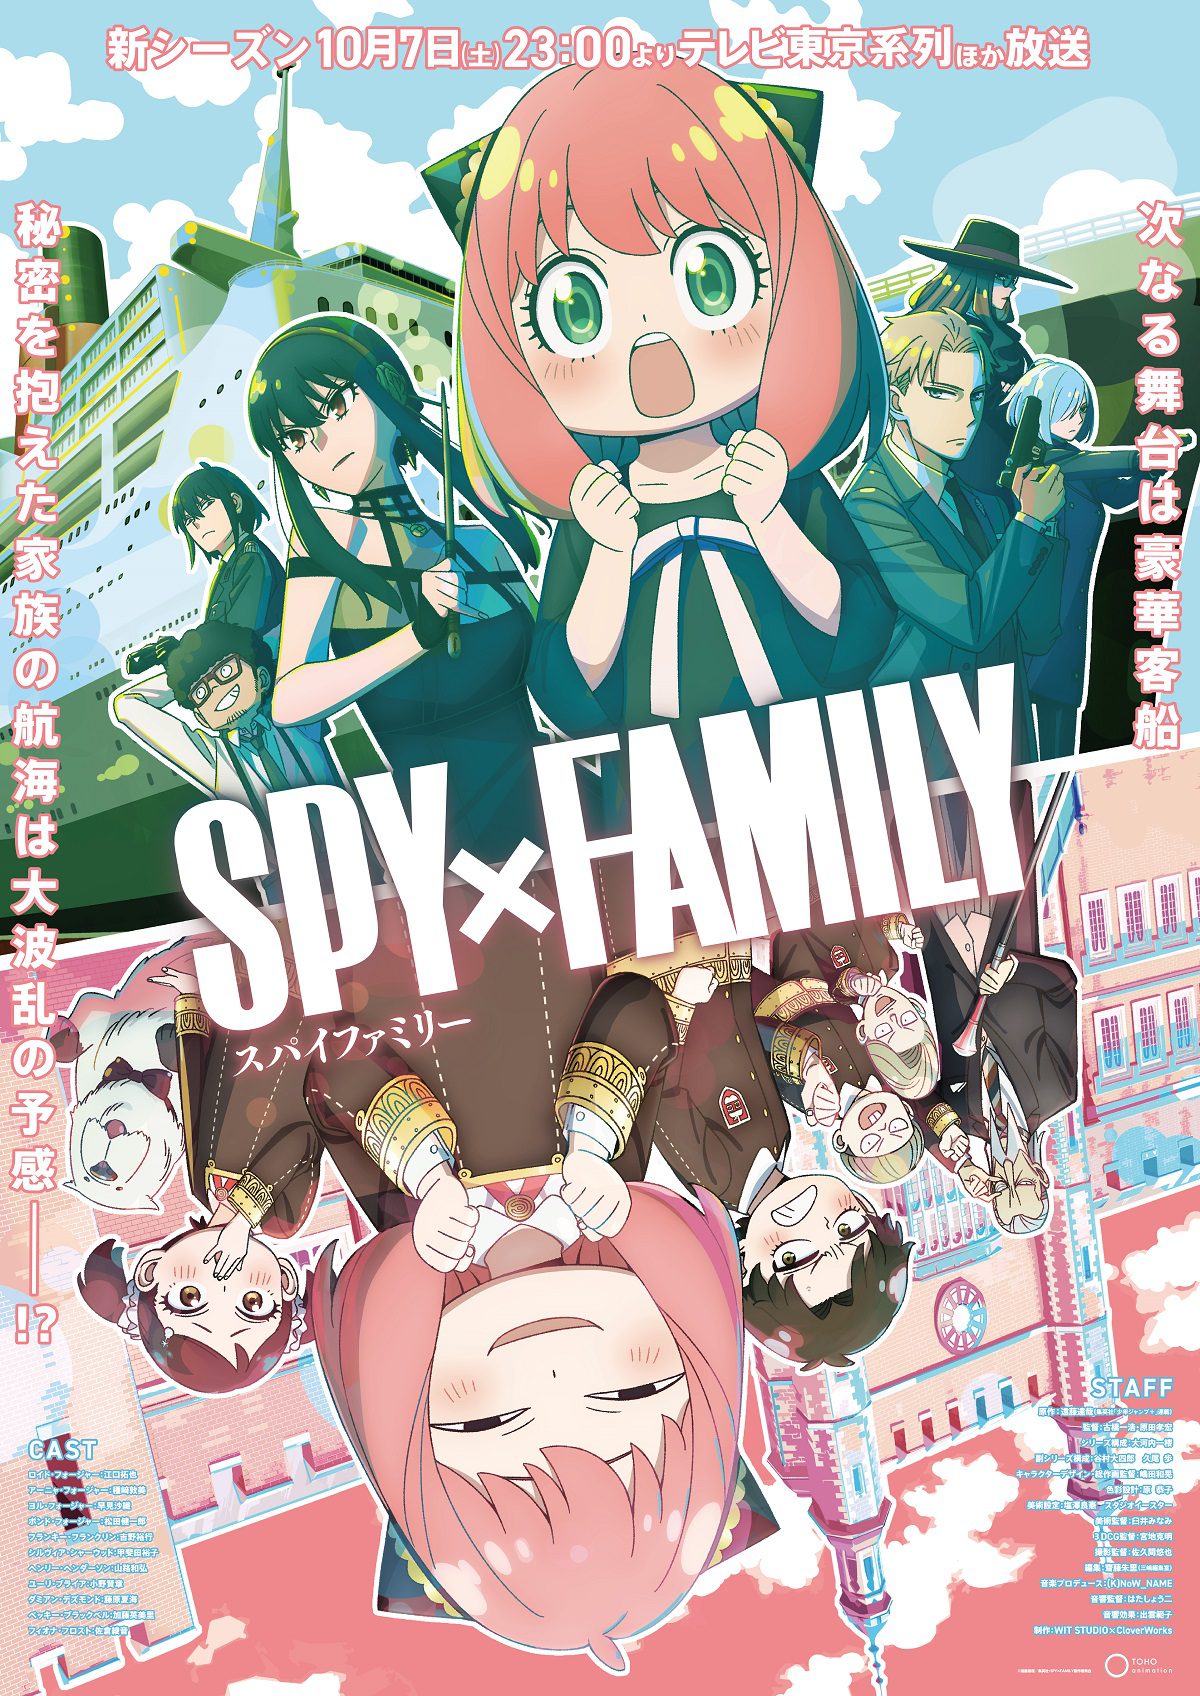 Spy x Family – Anime de comédia de espionagem ganha novo trailer e